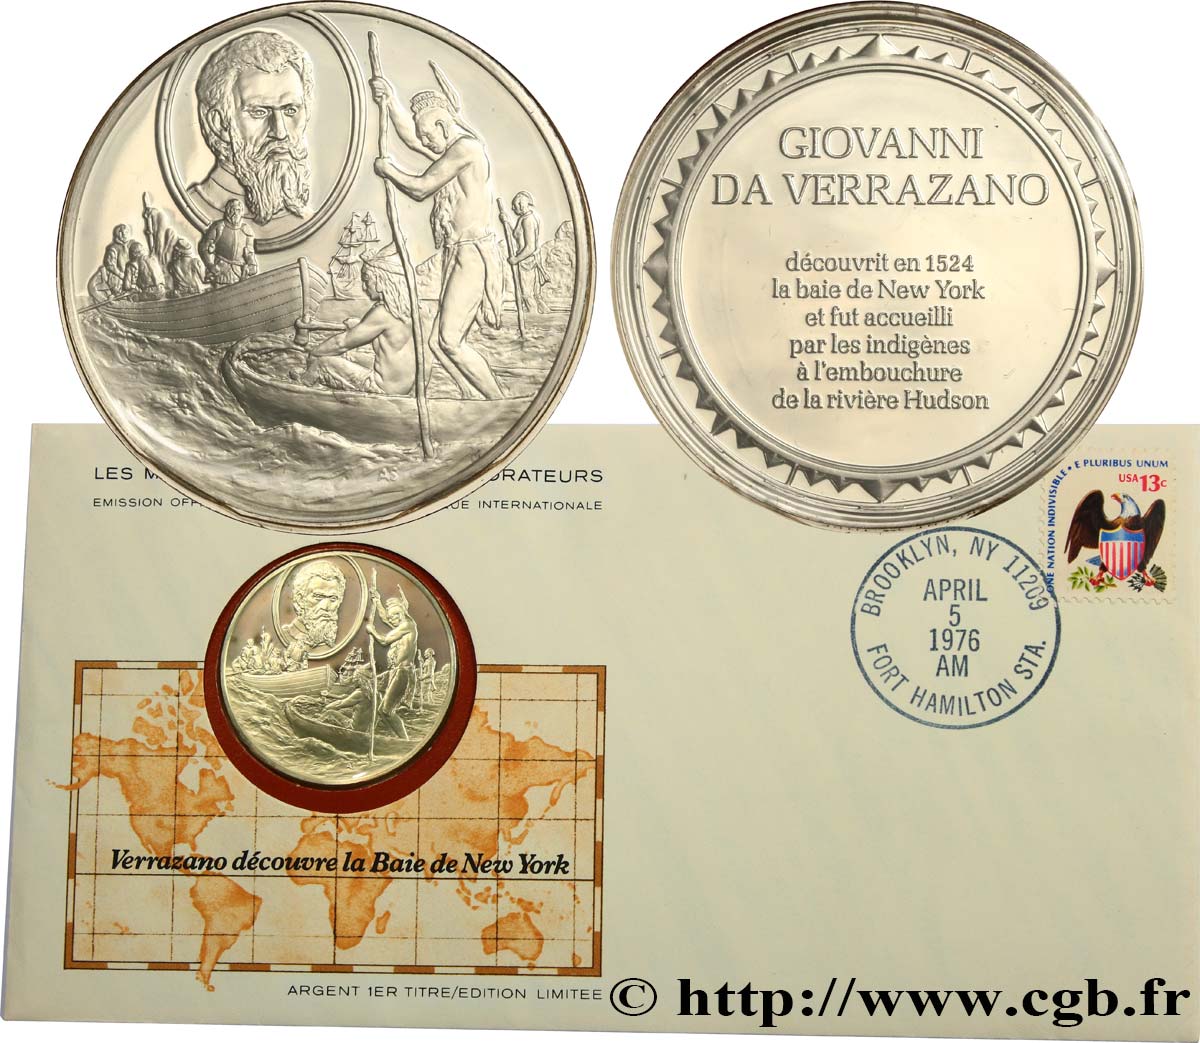 THE GREAT EXPLORERS  MEDALS Enveloppe “Timbre médaille”, Verrazano découvre la Baie de New York MS